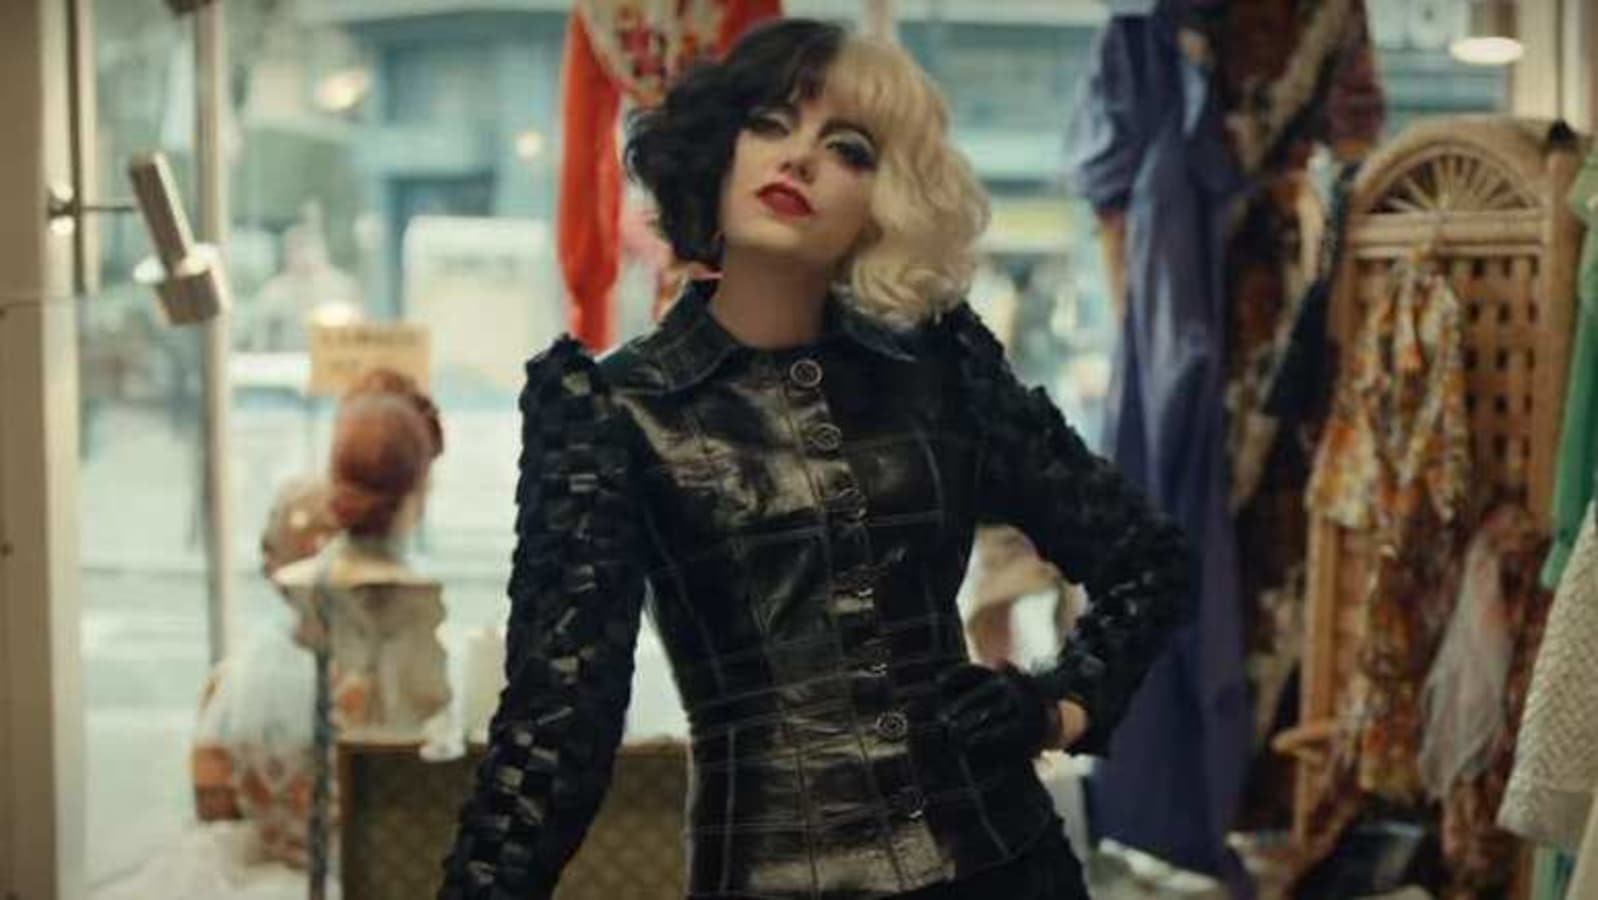 Cruella: Behind Emma Stone's fashion in Disney's 101 Dalmatians prequel